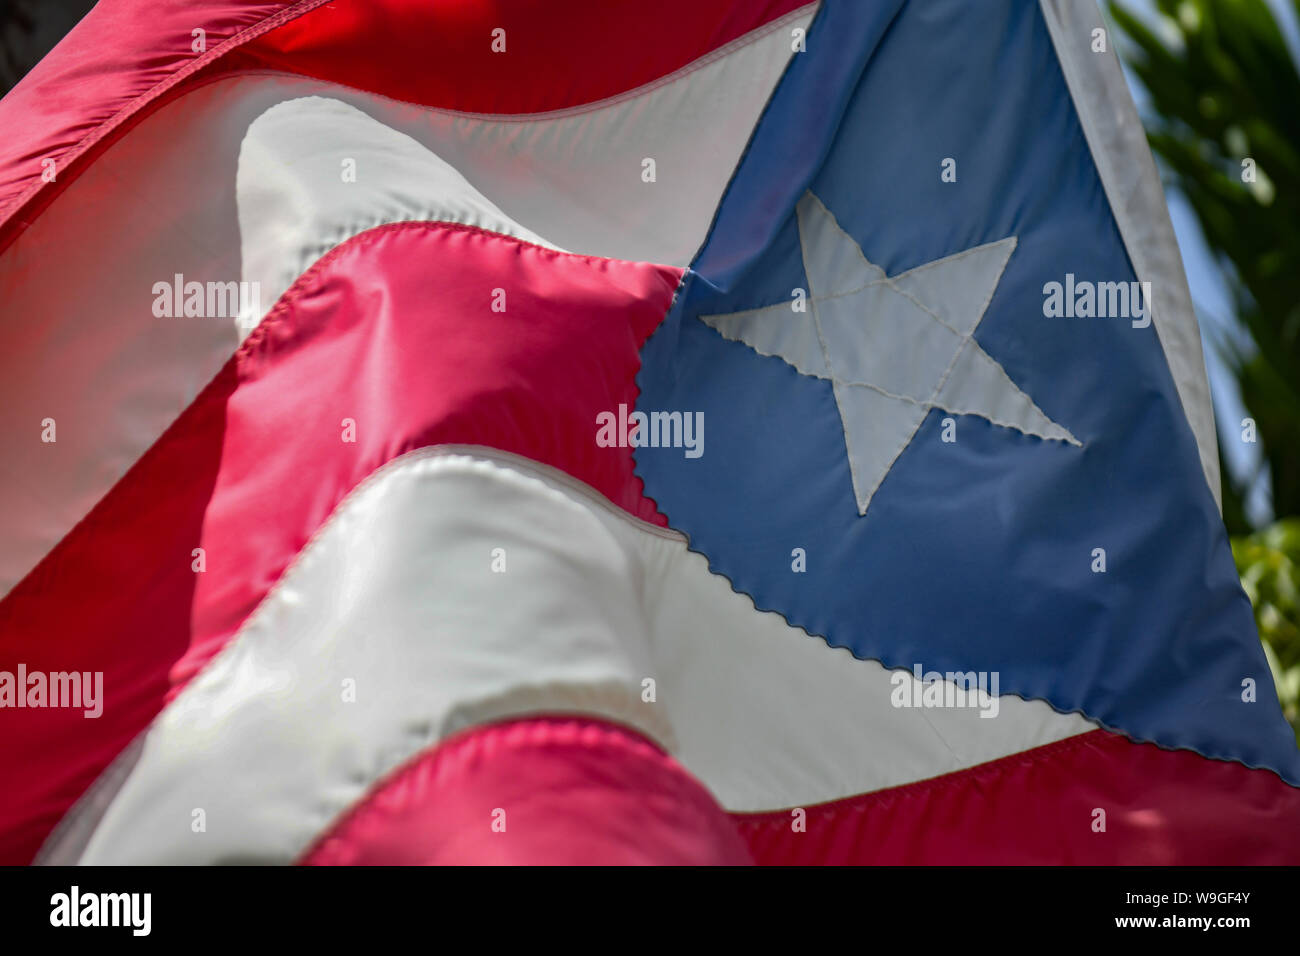 Puerto Rico ein tattered Puerto Rican flag fliegt in der Altstadt von San Juan Puerto Rico - eine zerrissene Puerto Rico Flagge Klappen in der Brise Stockfoto